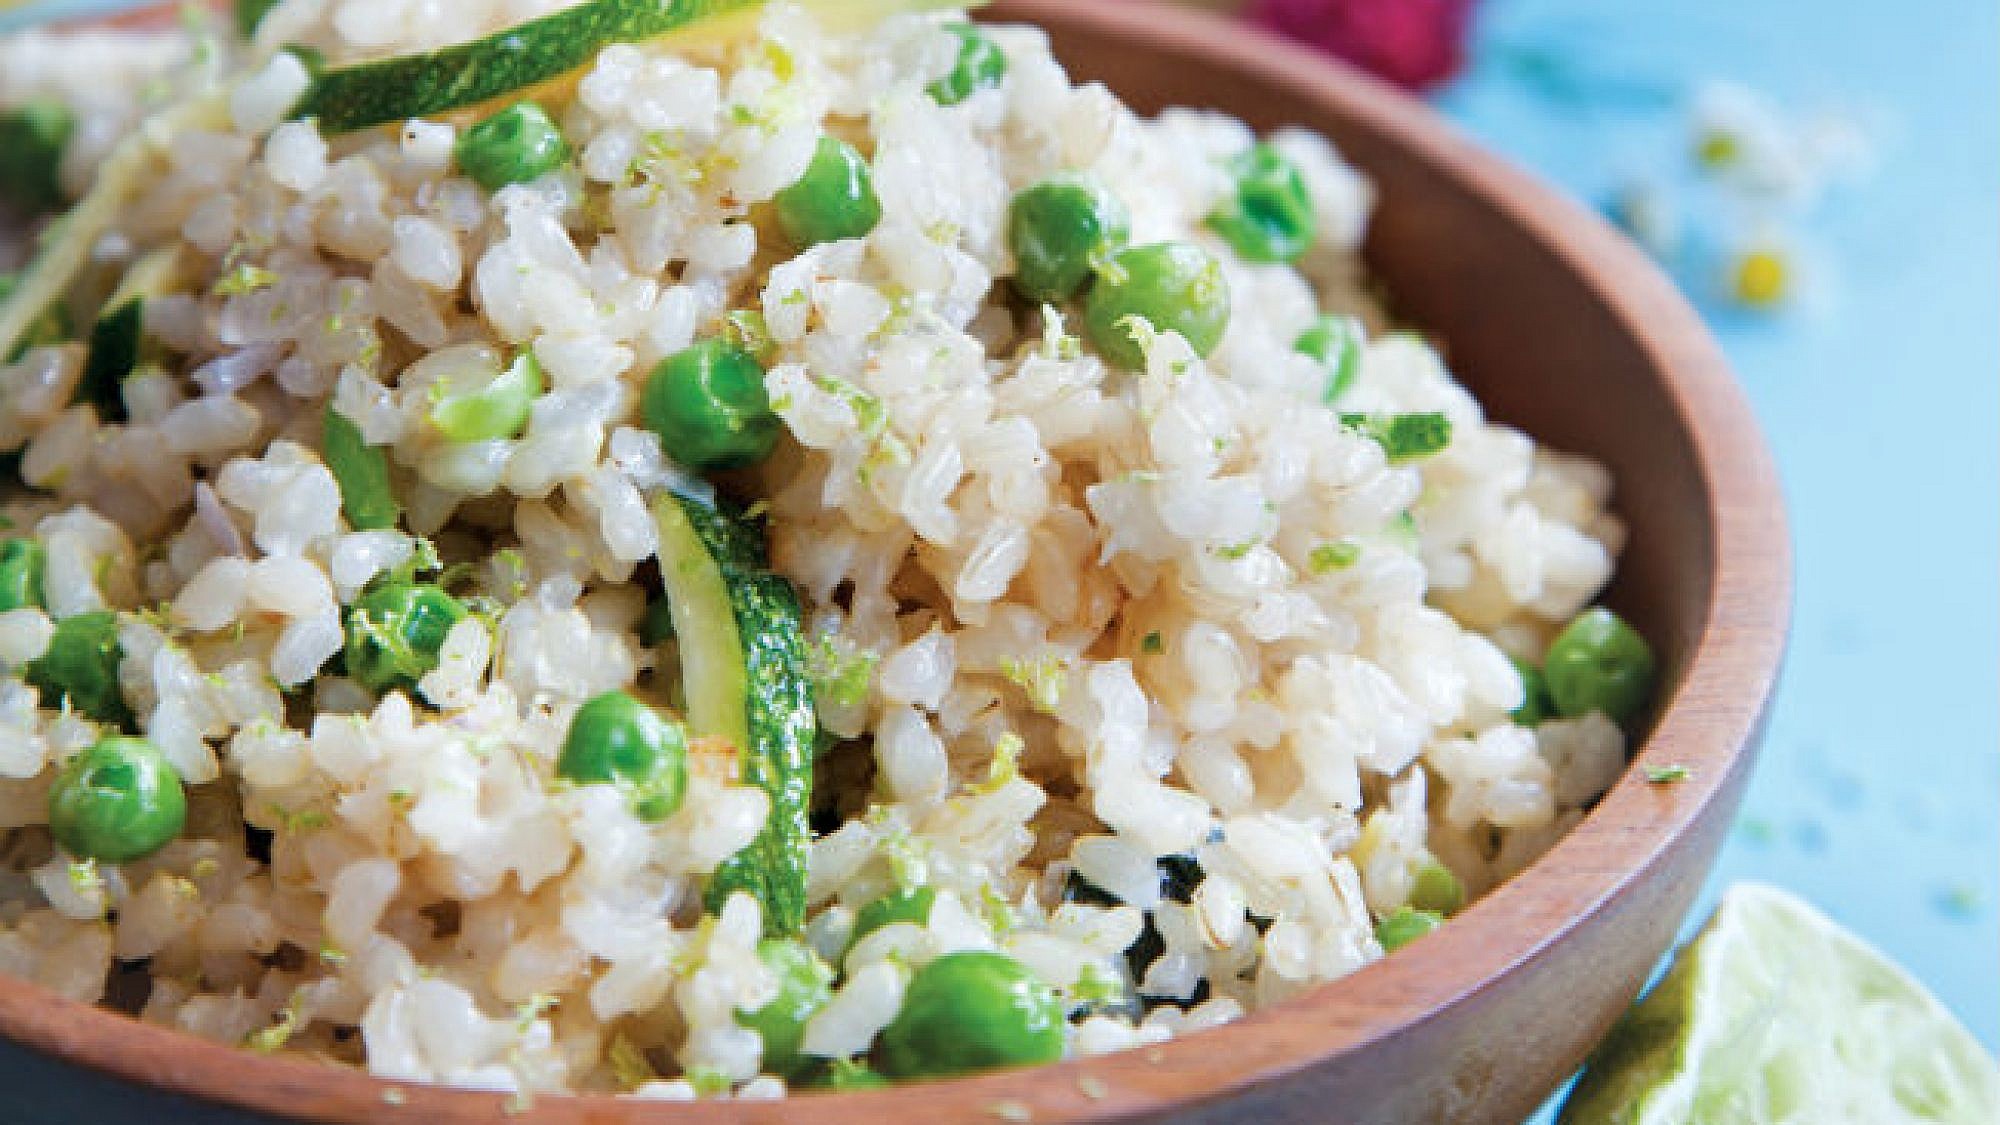 פילאף ירוק של אורז מלא עם אפונה וחלב קוקוס. צילום: דן לב | סגנון: אוריה גבע